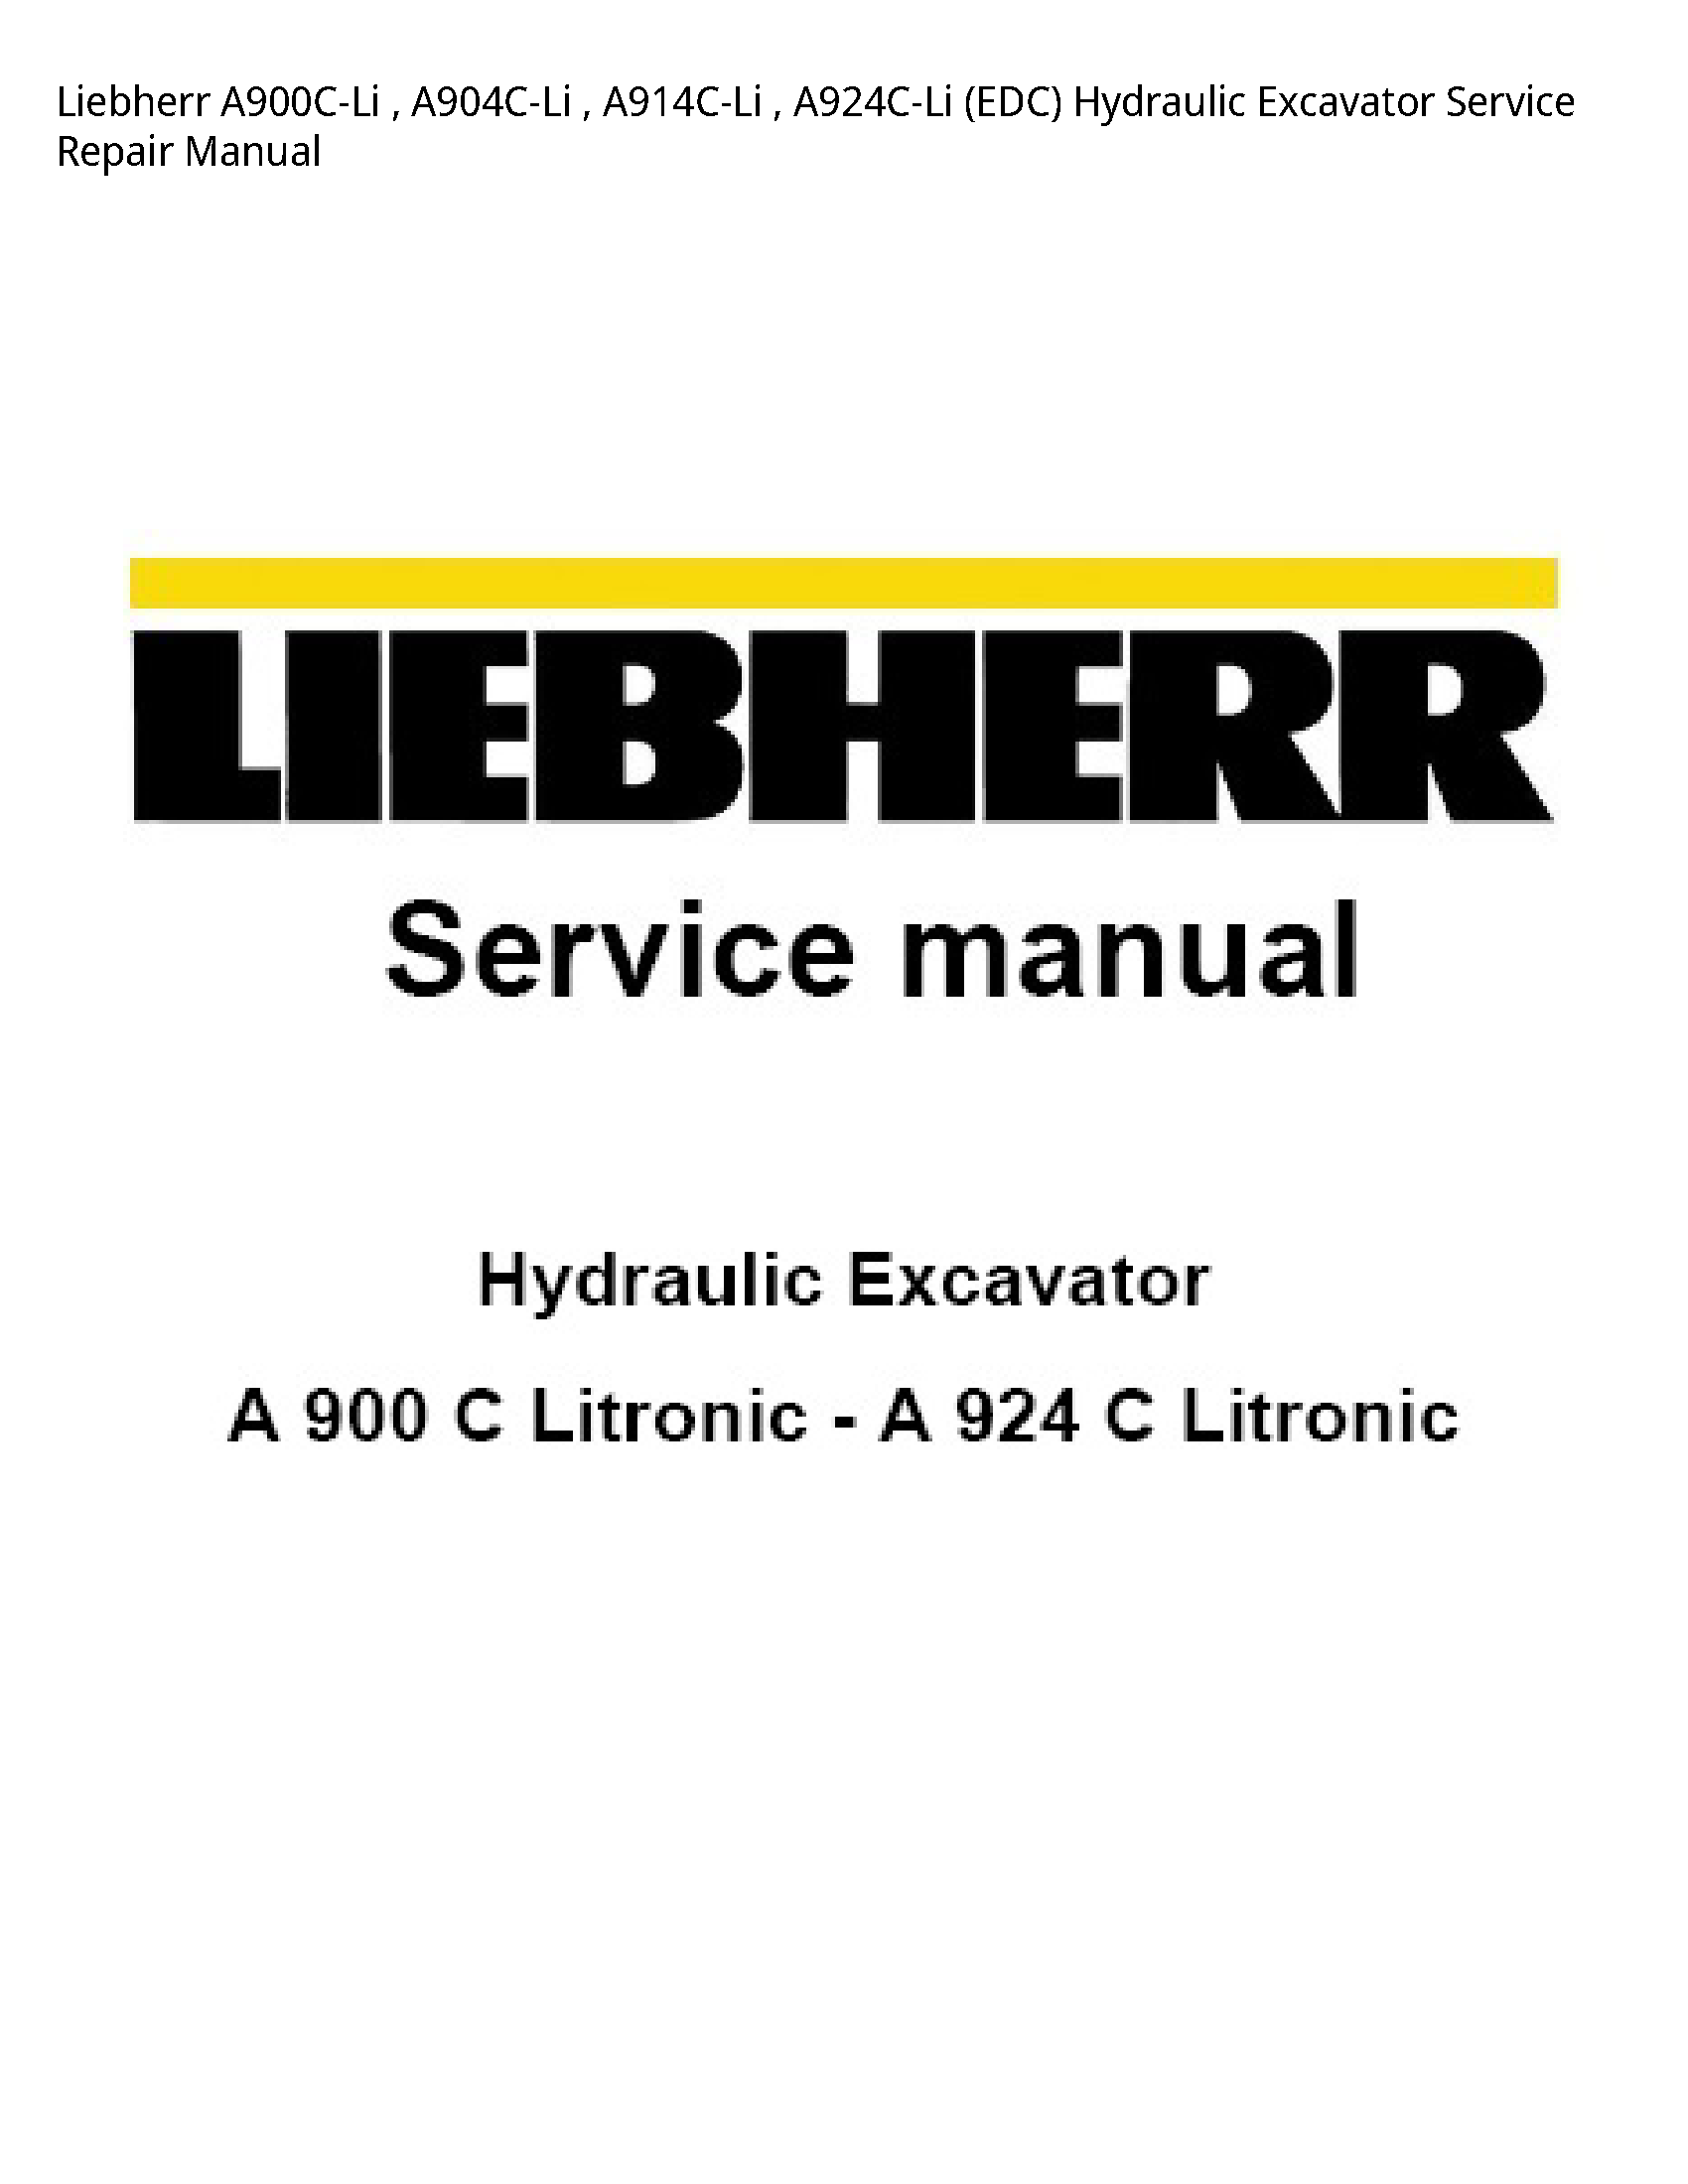 Liebherr A900C-Li EDC Hydraulic Excavator manual